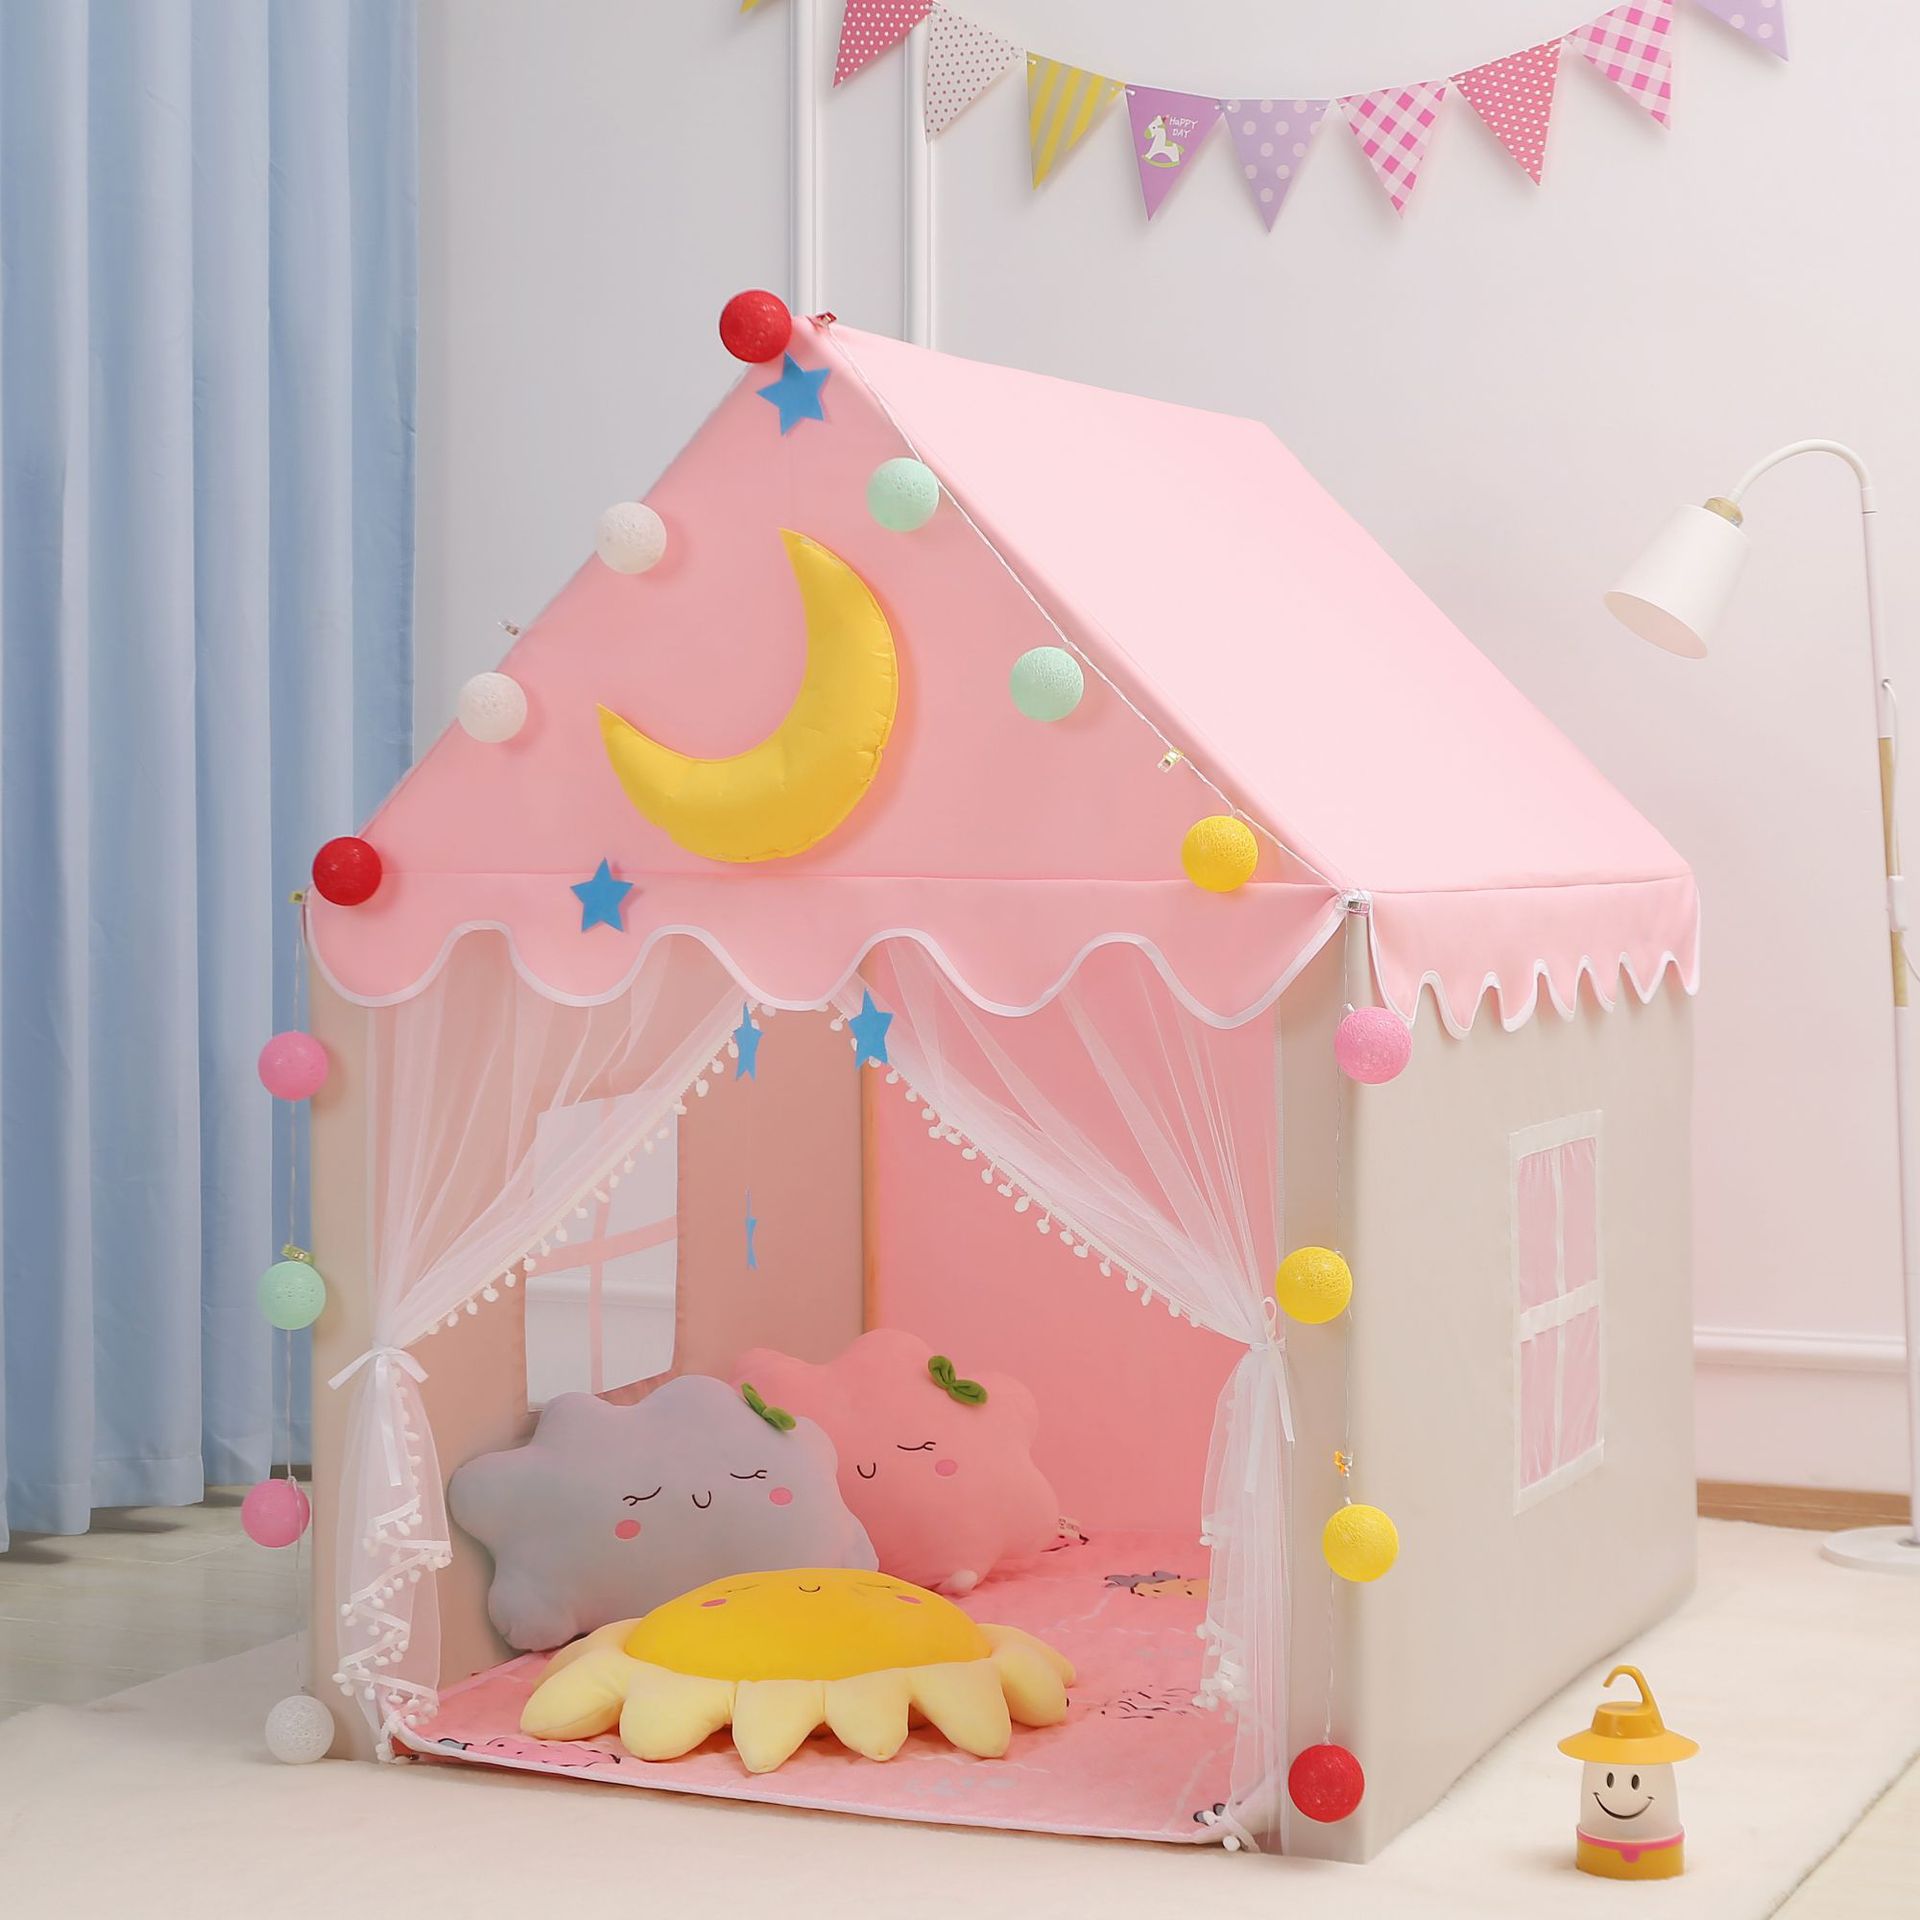 兒童帳篷室內女孩公主小帳篷夢幻可睡覺游戲玩具屋寶寶分床神器